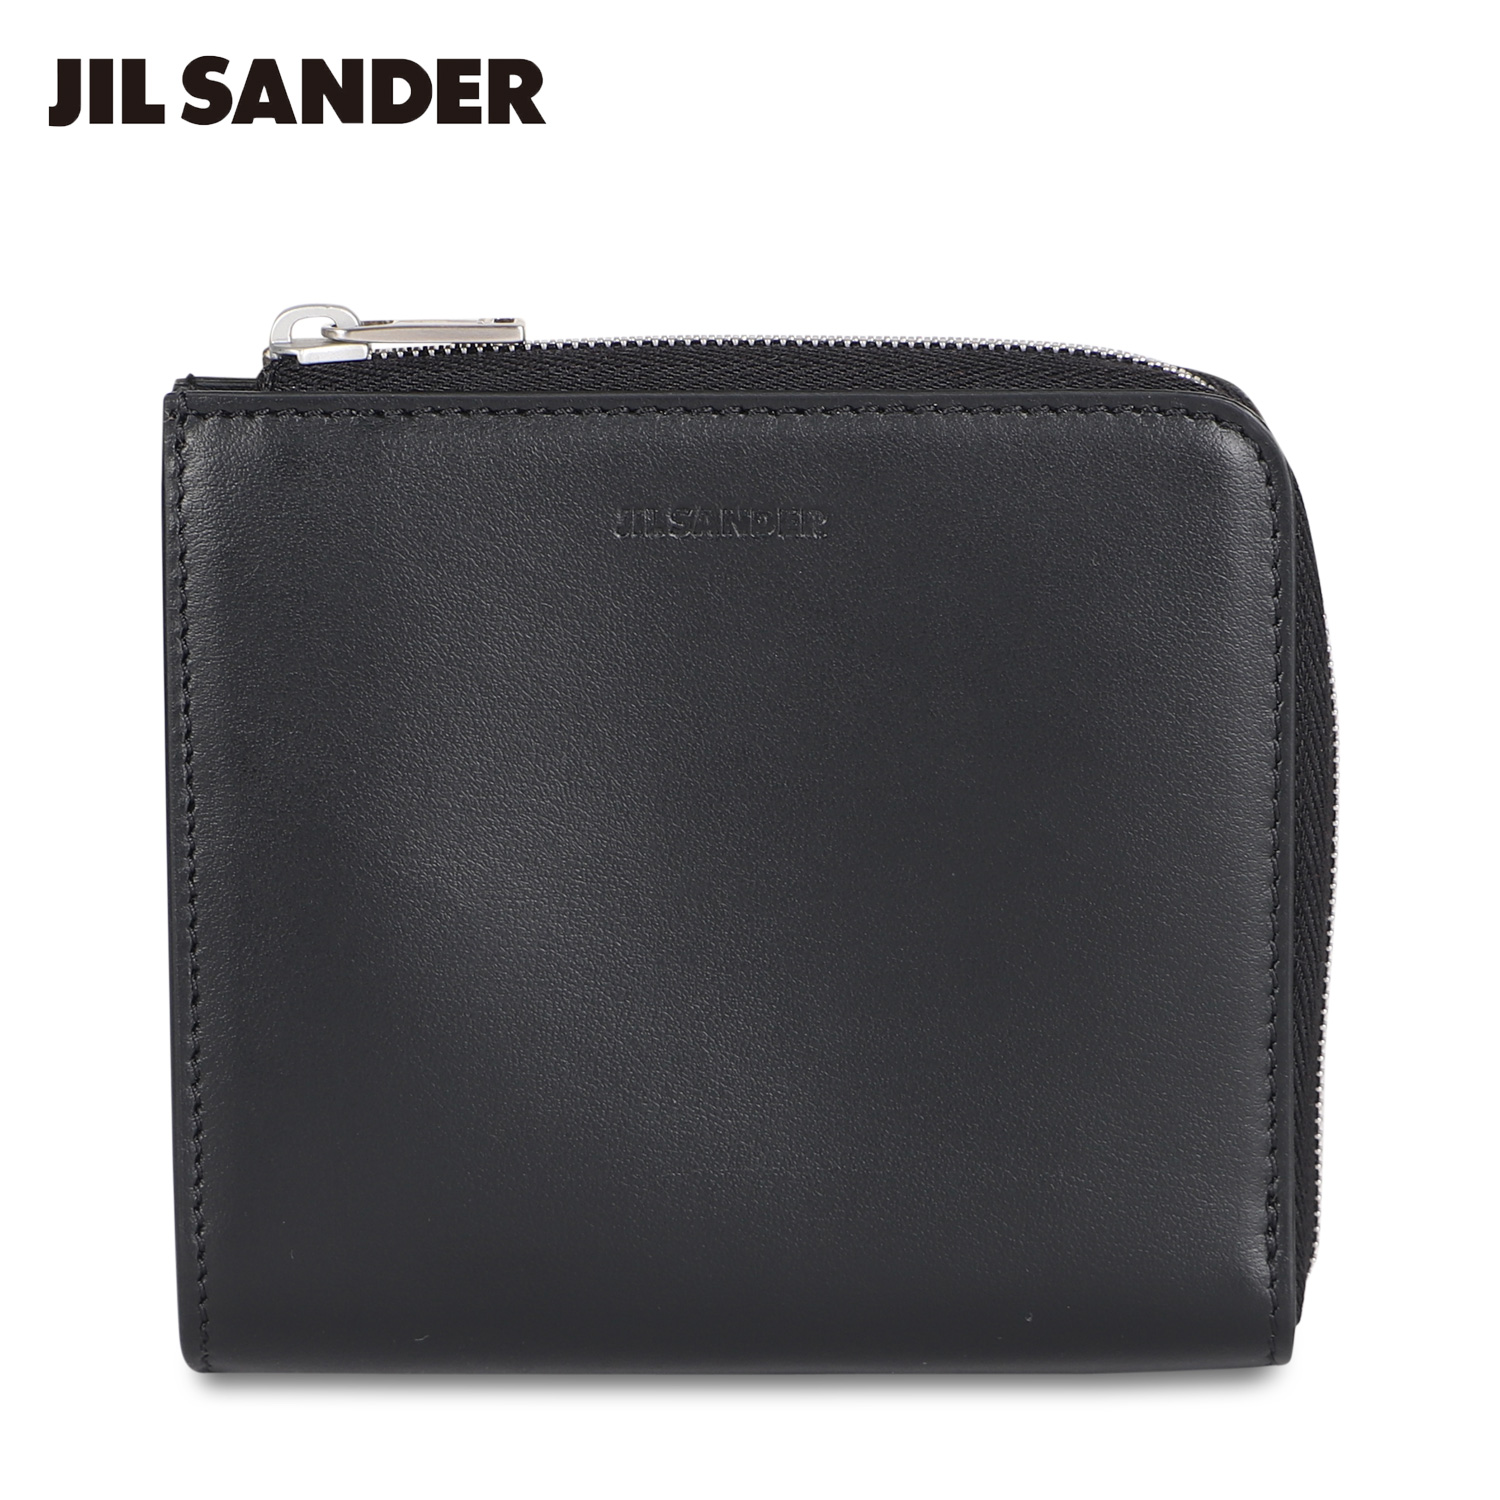 JIL SANDER ジルサンダー 財布 カードケース 名刺入れ 定期入れ メンズ